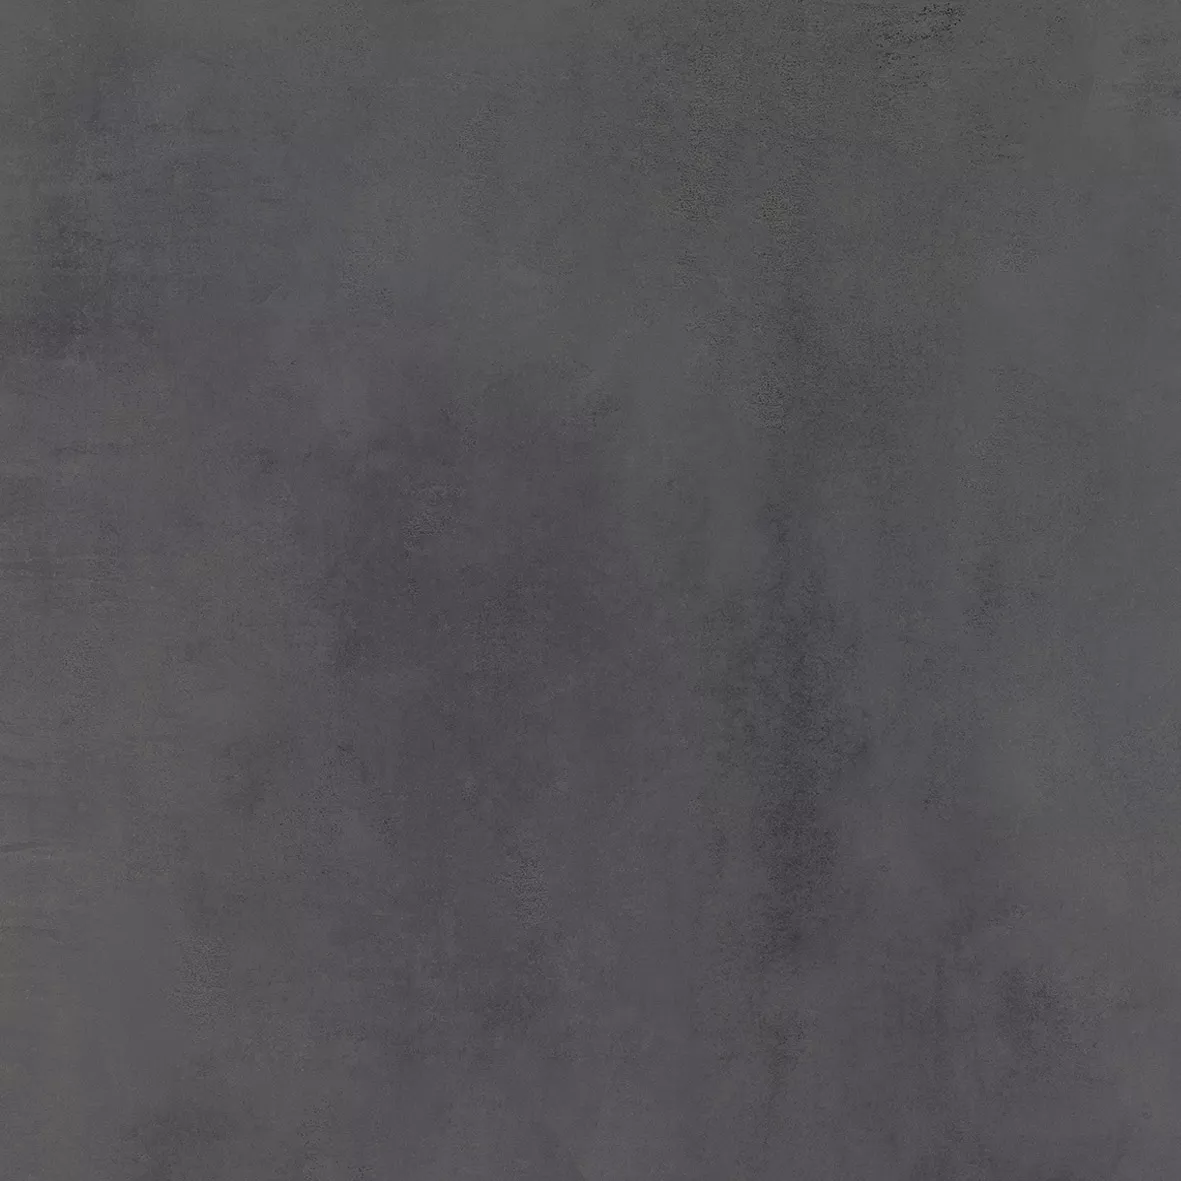 Πρότυπο Πλακάκια Δαπέδου Tycoon Συγκεκριμένη Εμφάνιση R10 Ανθρακίτης 120x120cm